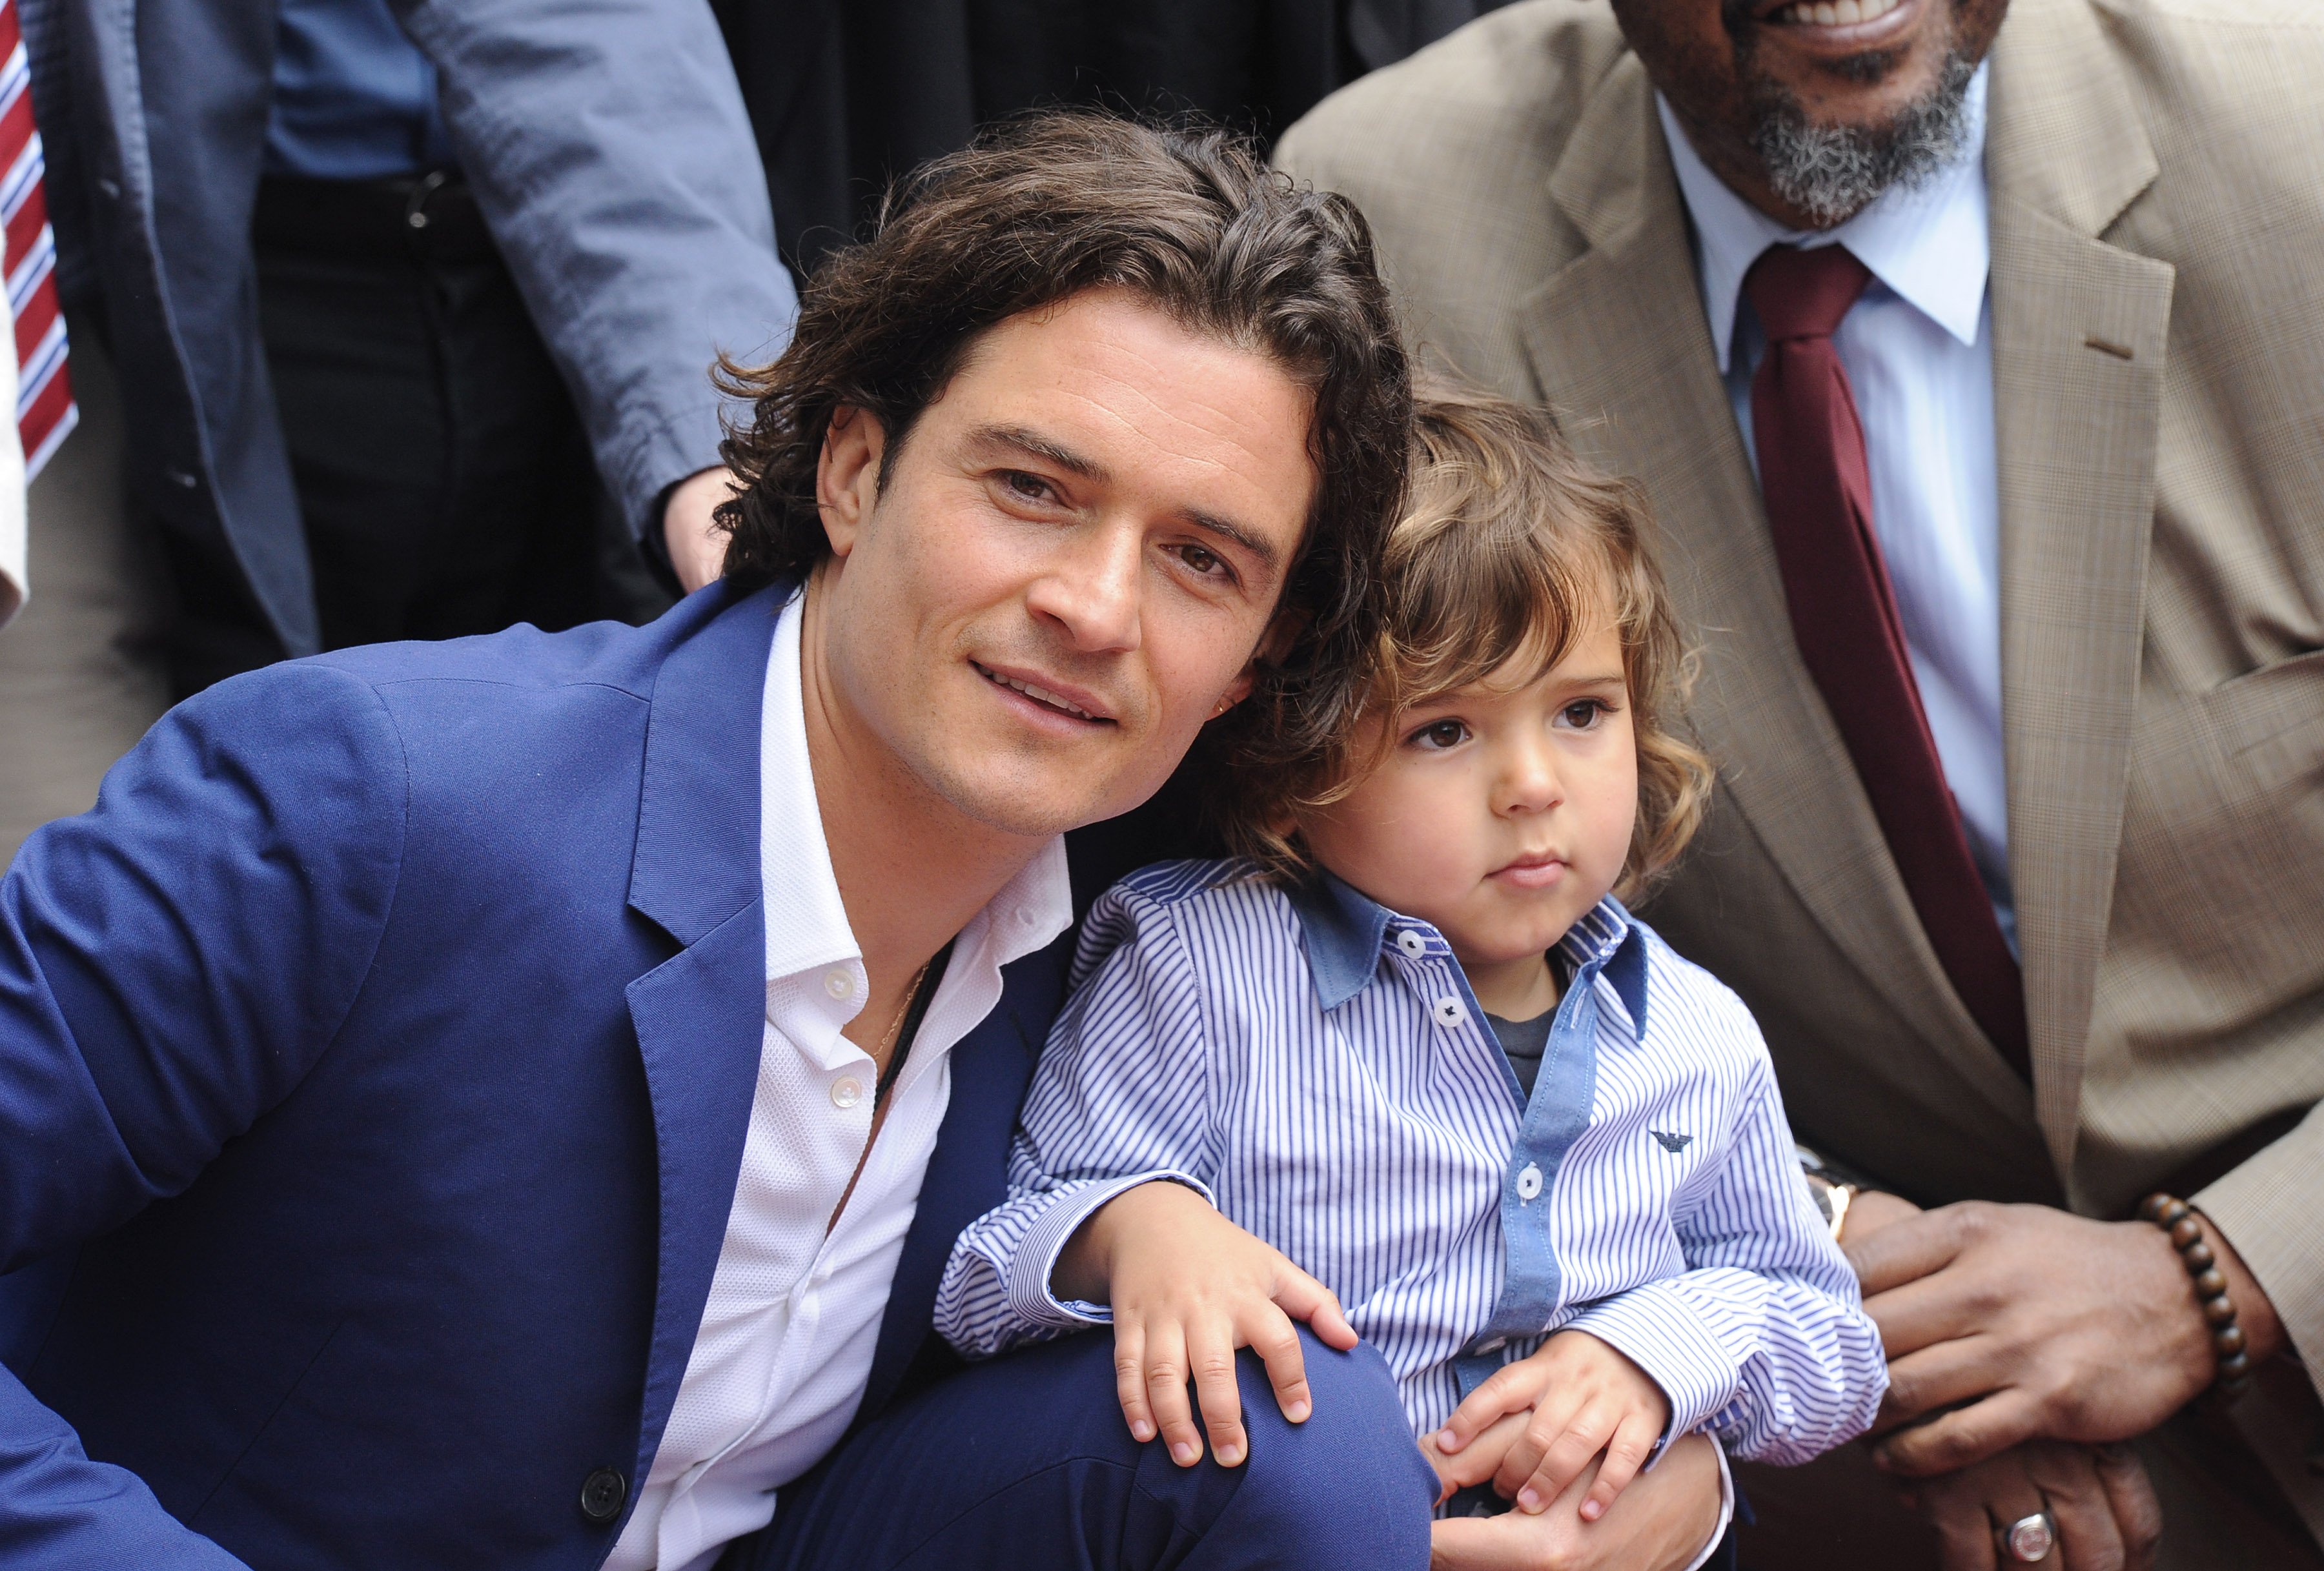 Orlando Bloom with son Flynn